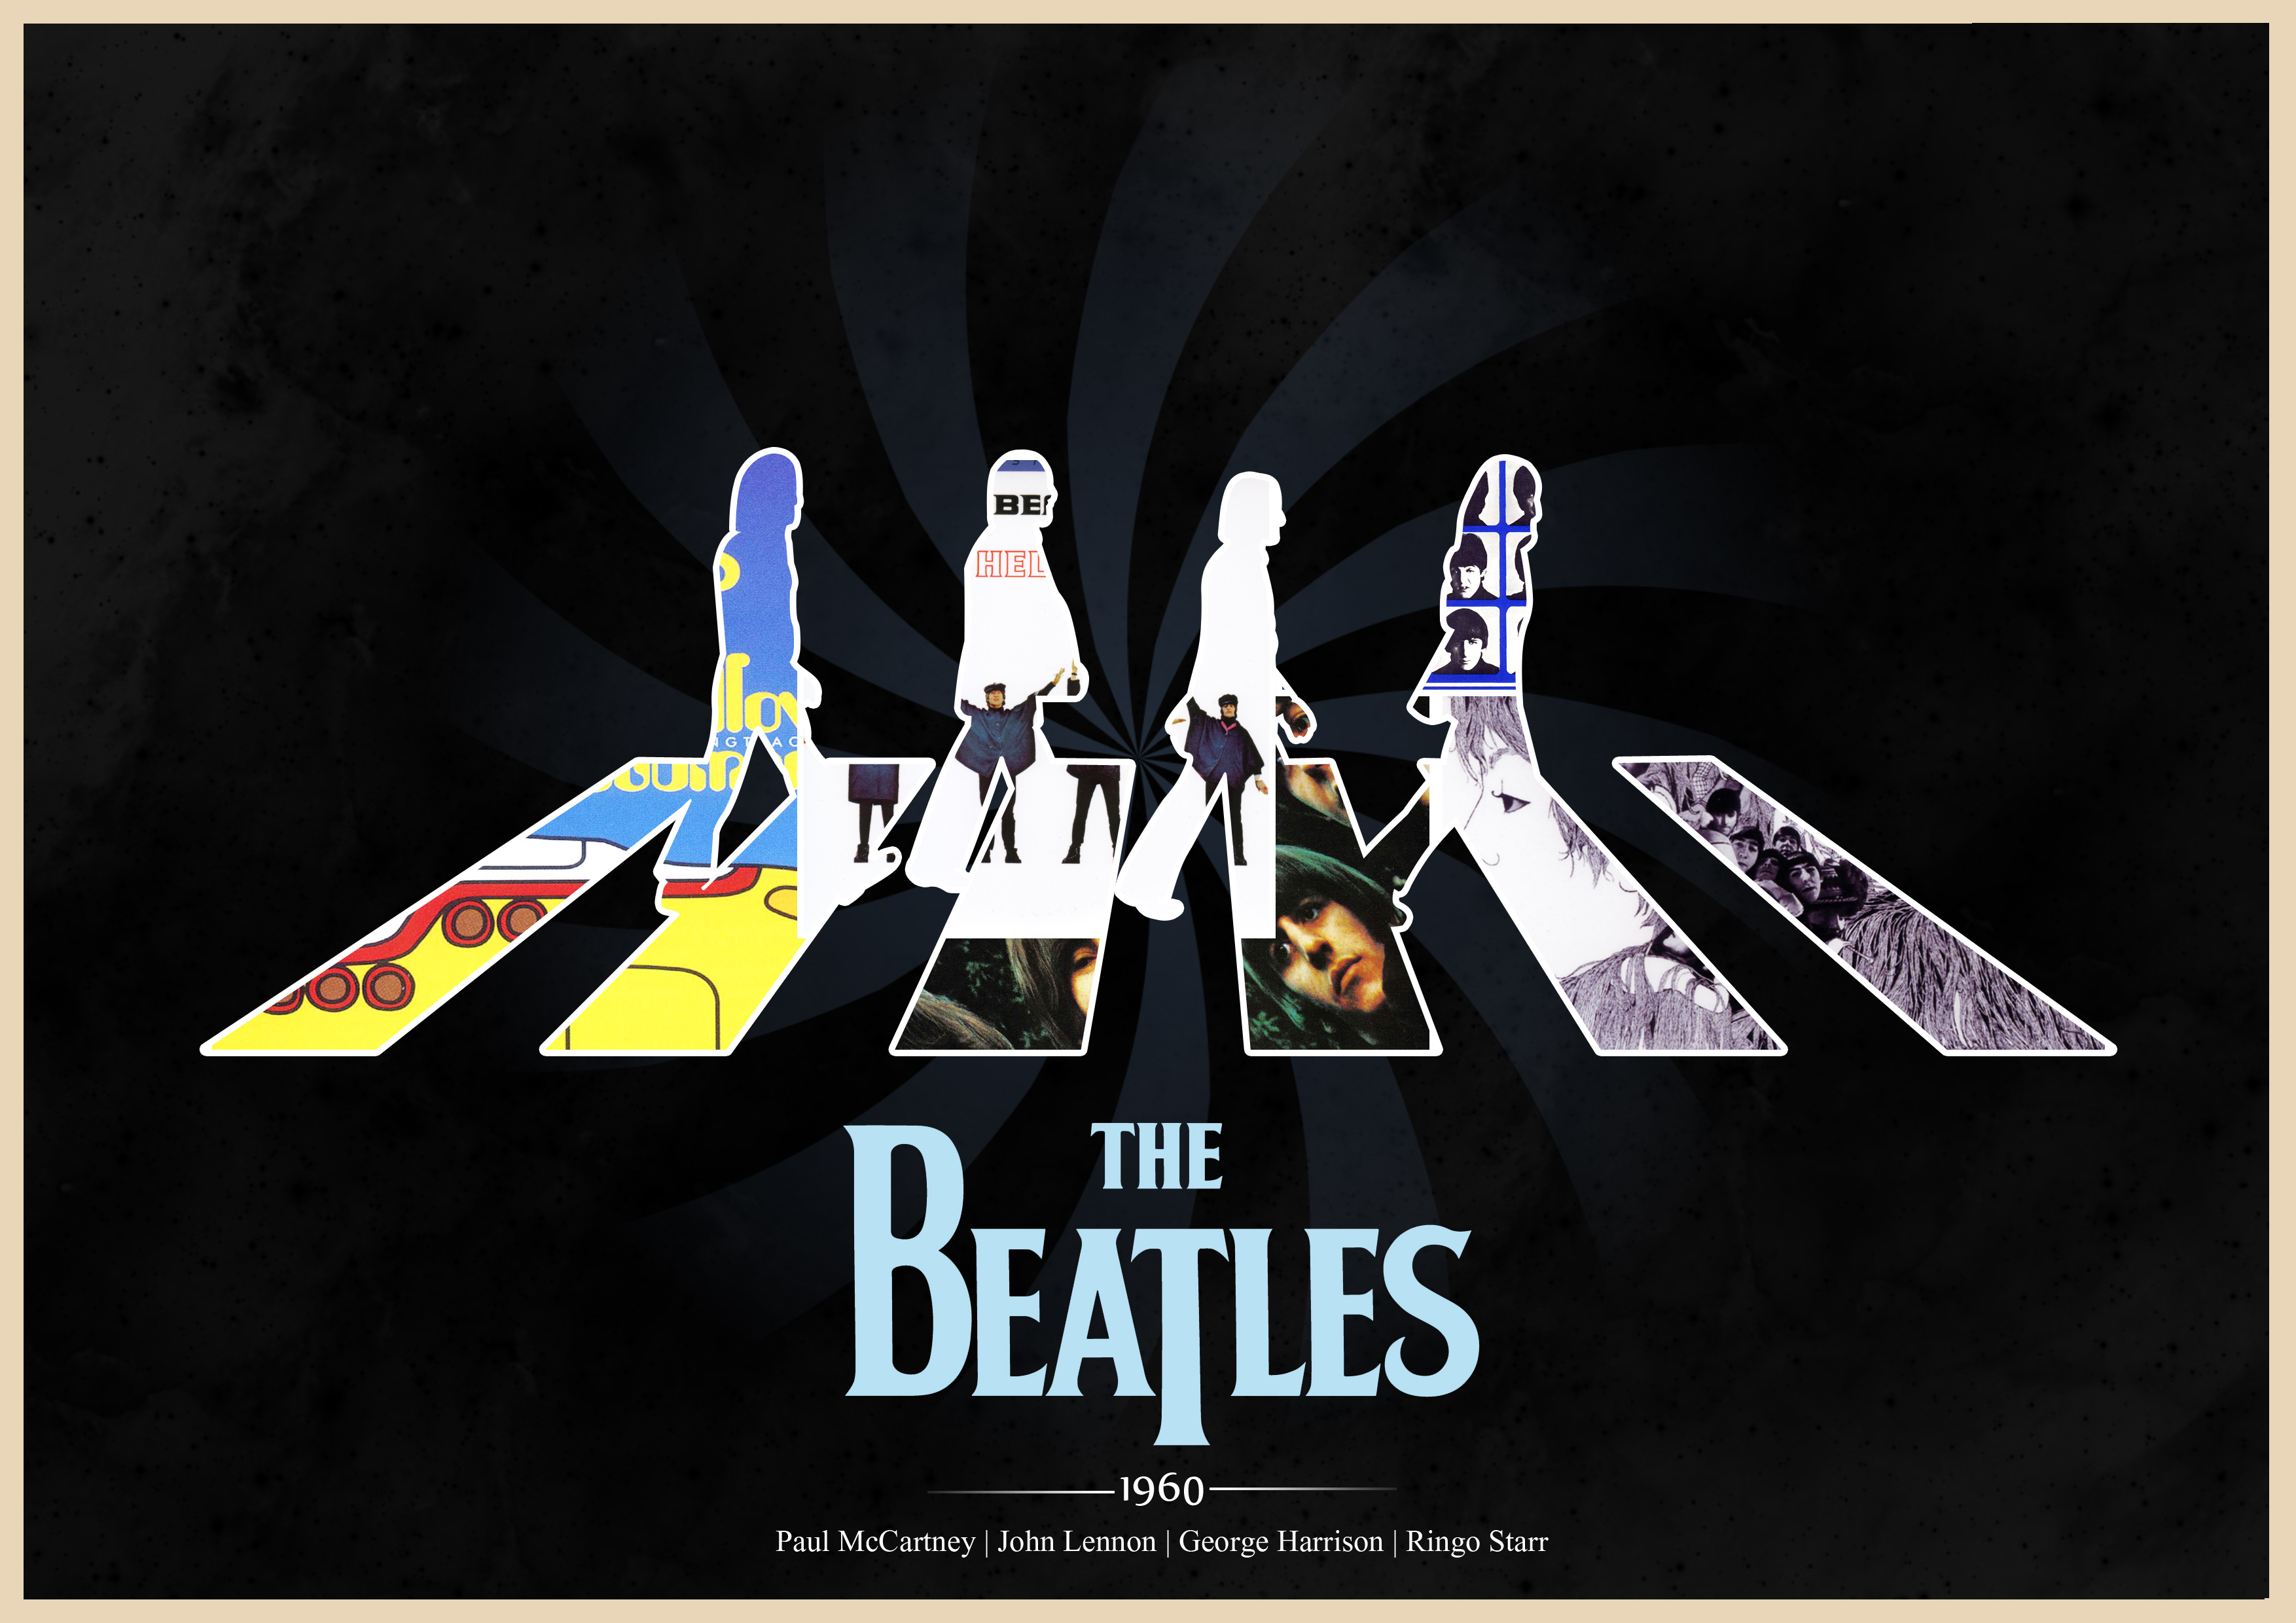 The Beatles Computer Wallpapers Desktop Backgrounds 3508x2480 ID